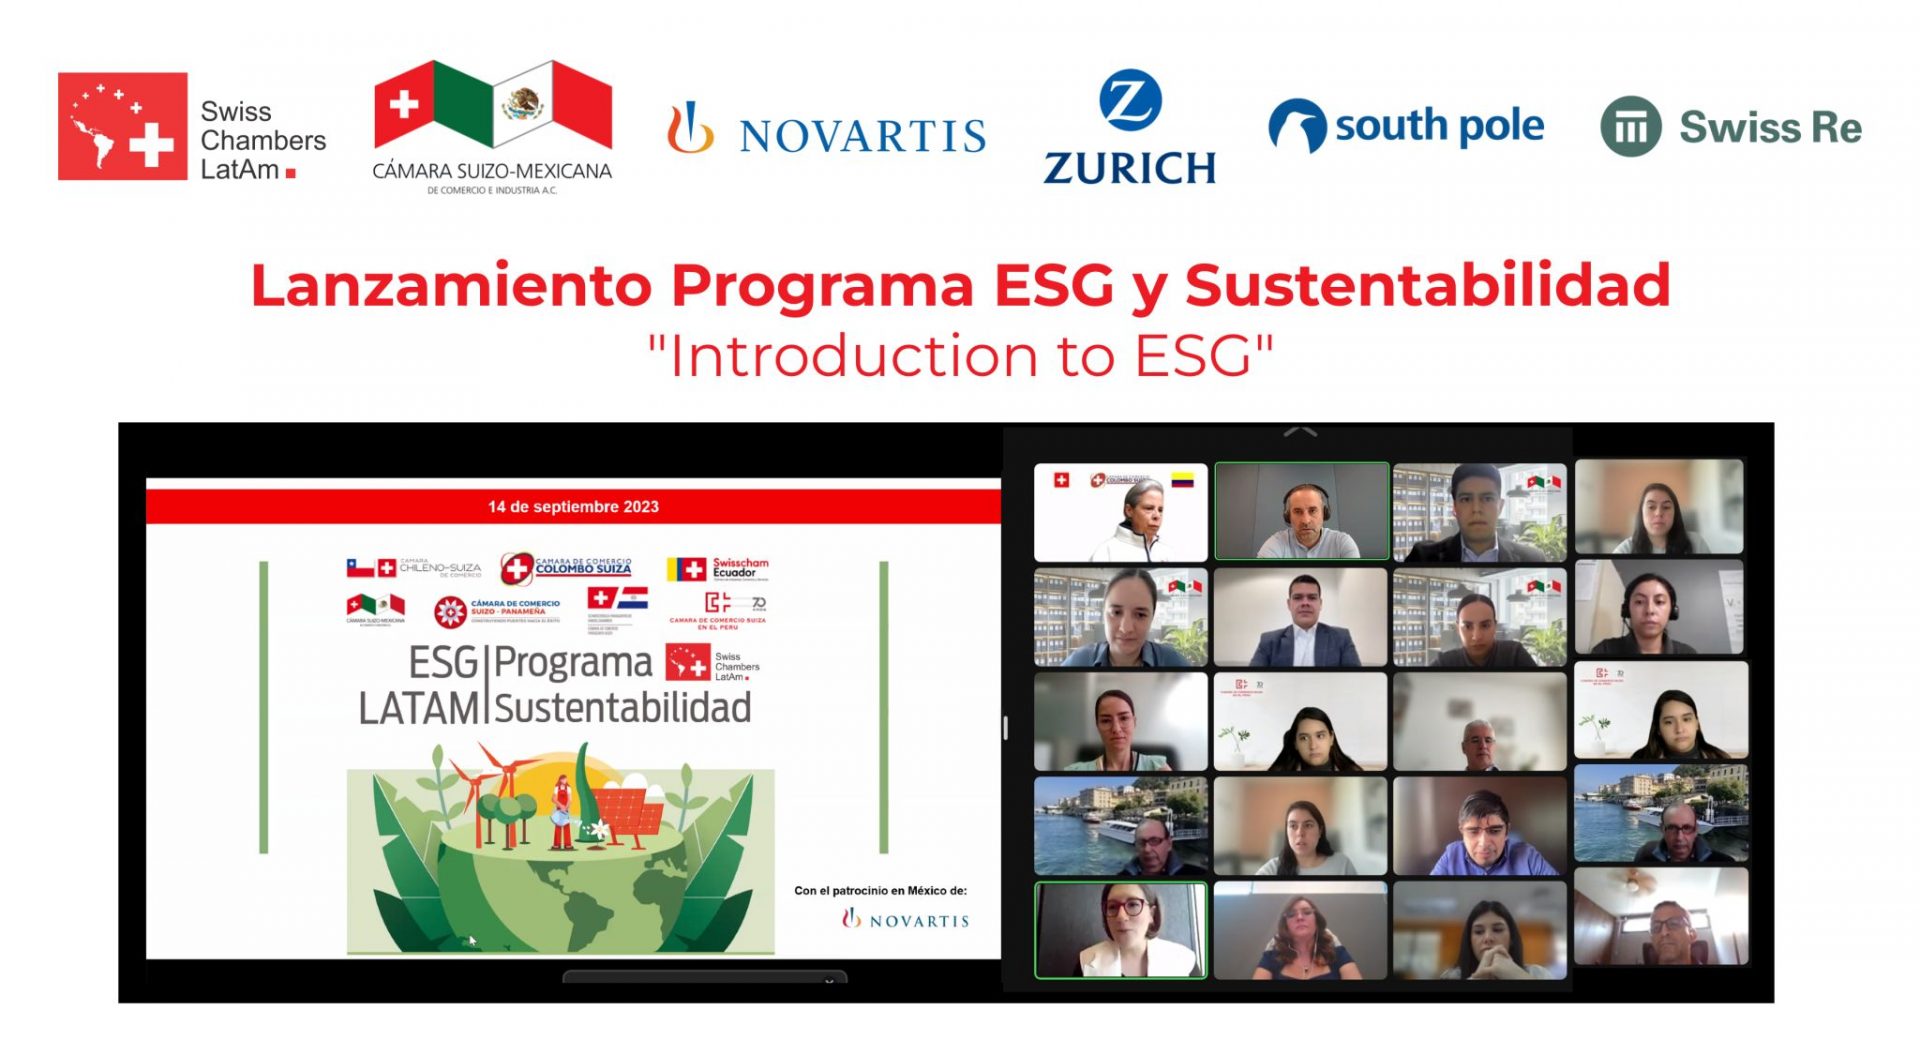 ESG and Sustainability 2023 Program Launching